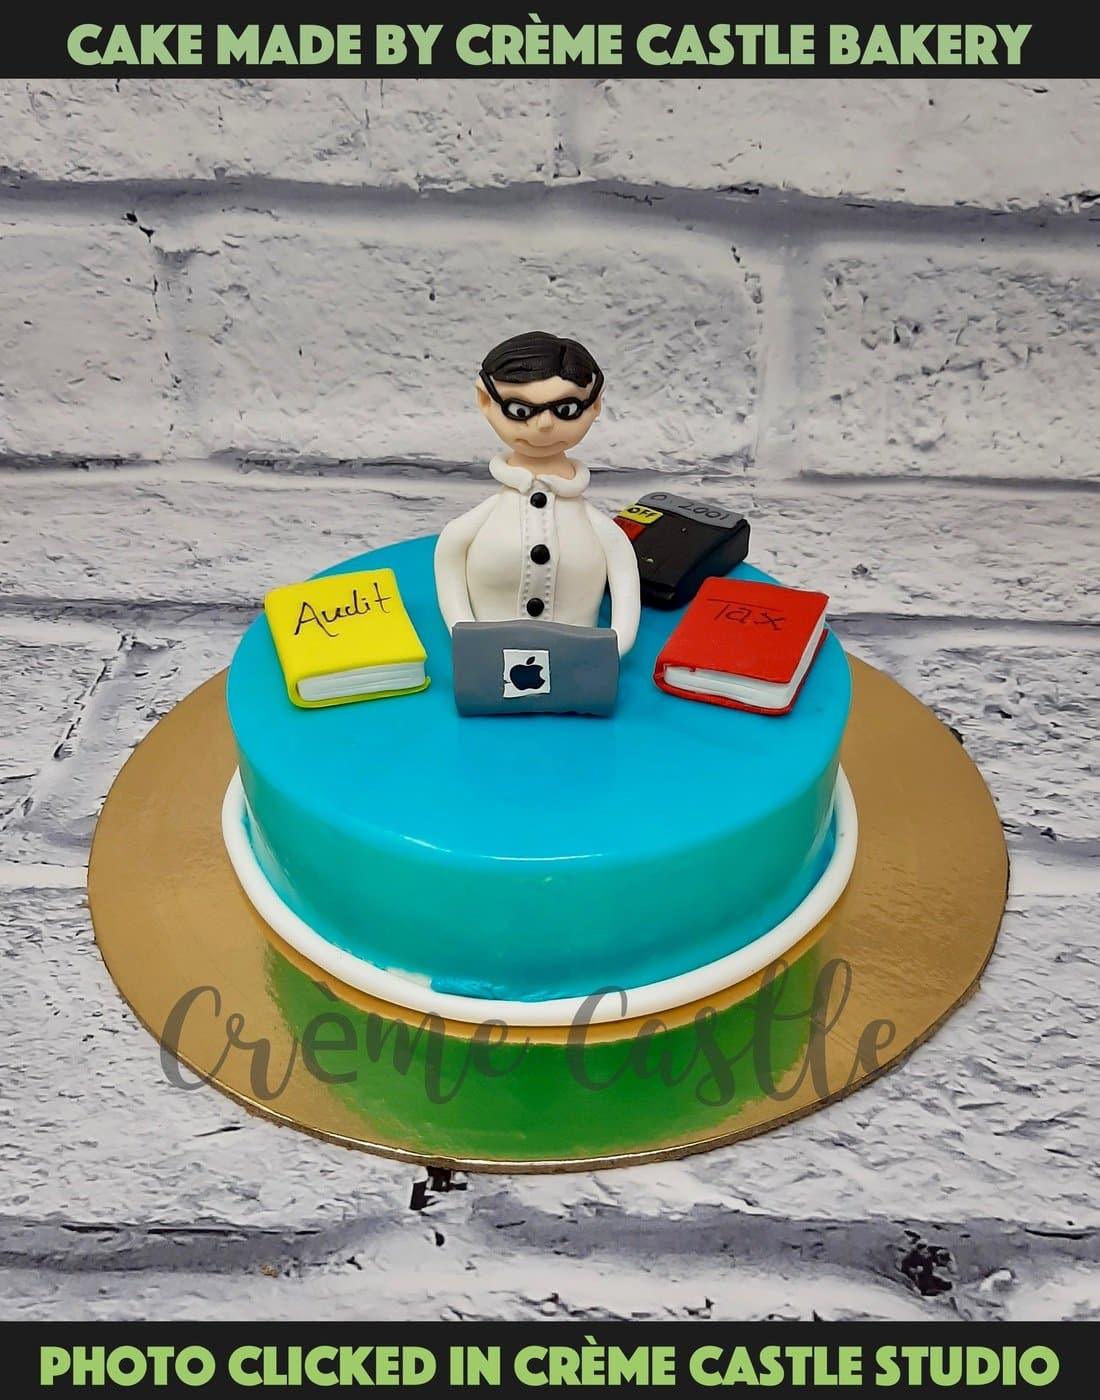 Nikkilicious - Birthday cake for chartered accountant ❤️  #cakeforcharteredaccountant #charteredaccountantcake #cakeartist  #cakedecorating #cakesmash #cakephotography #cakesofinstagram #chandigarh  #panchkula #mohali #nikkilicious | Facebook